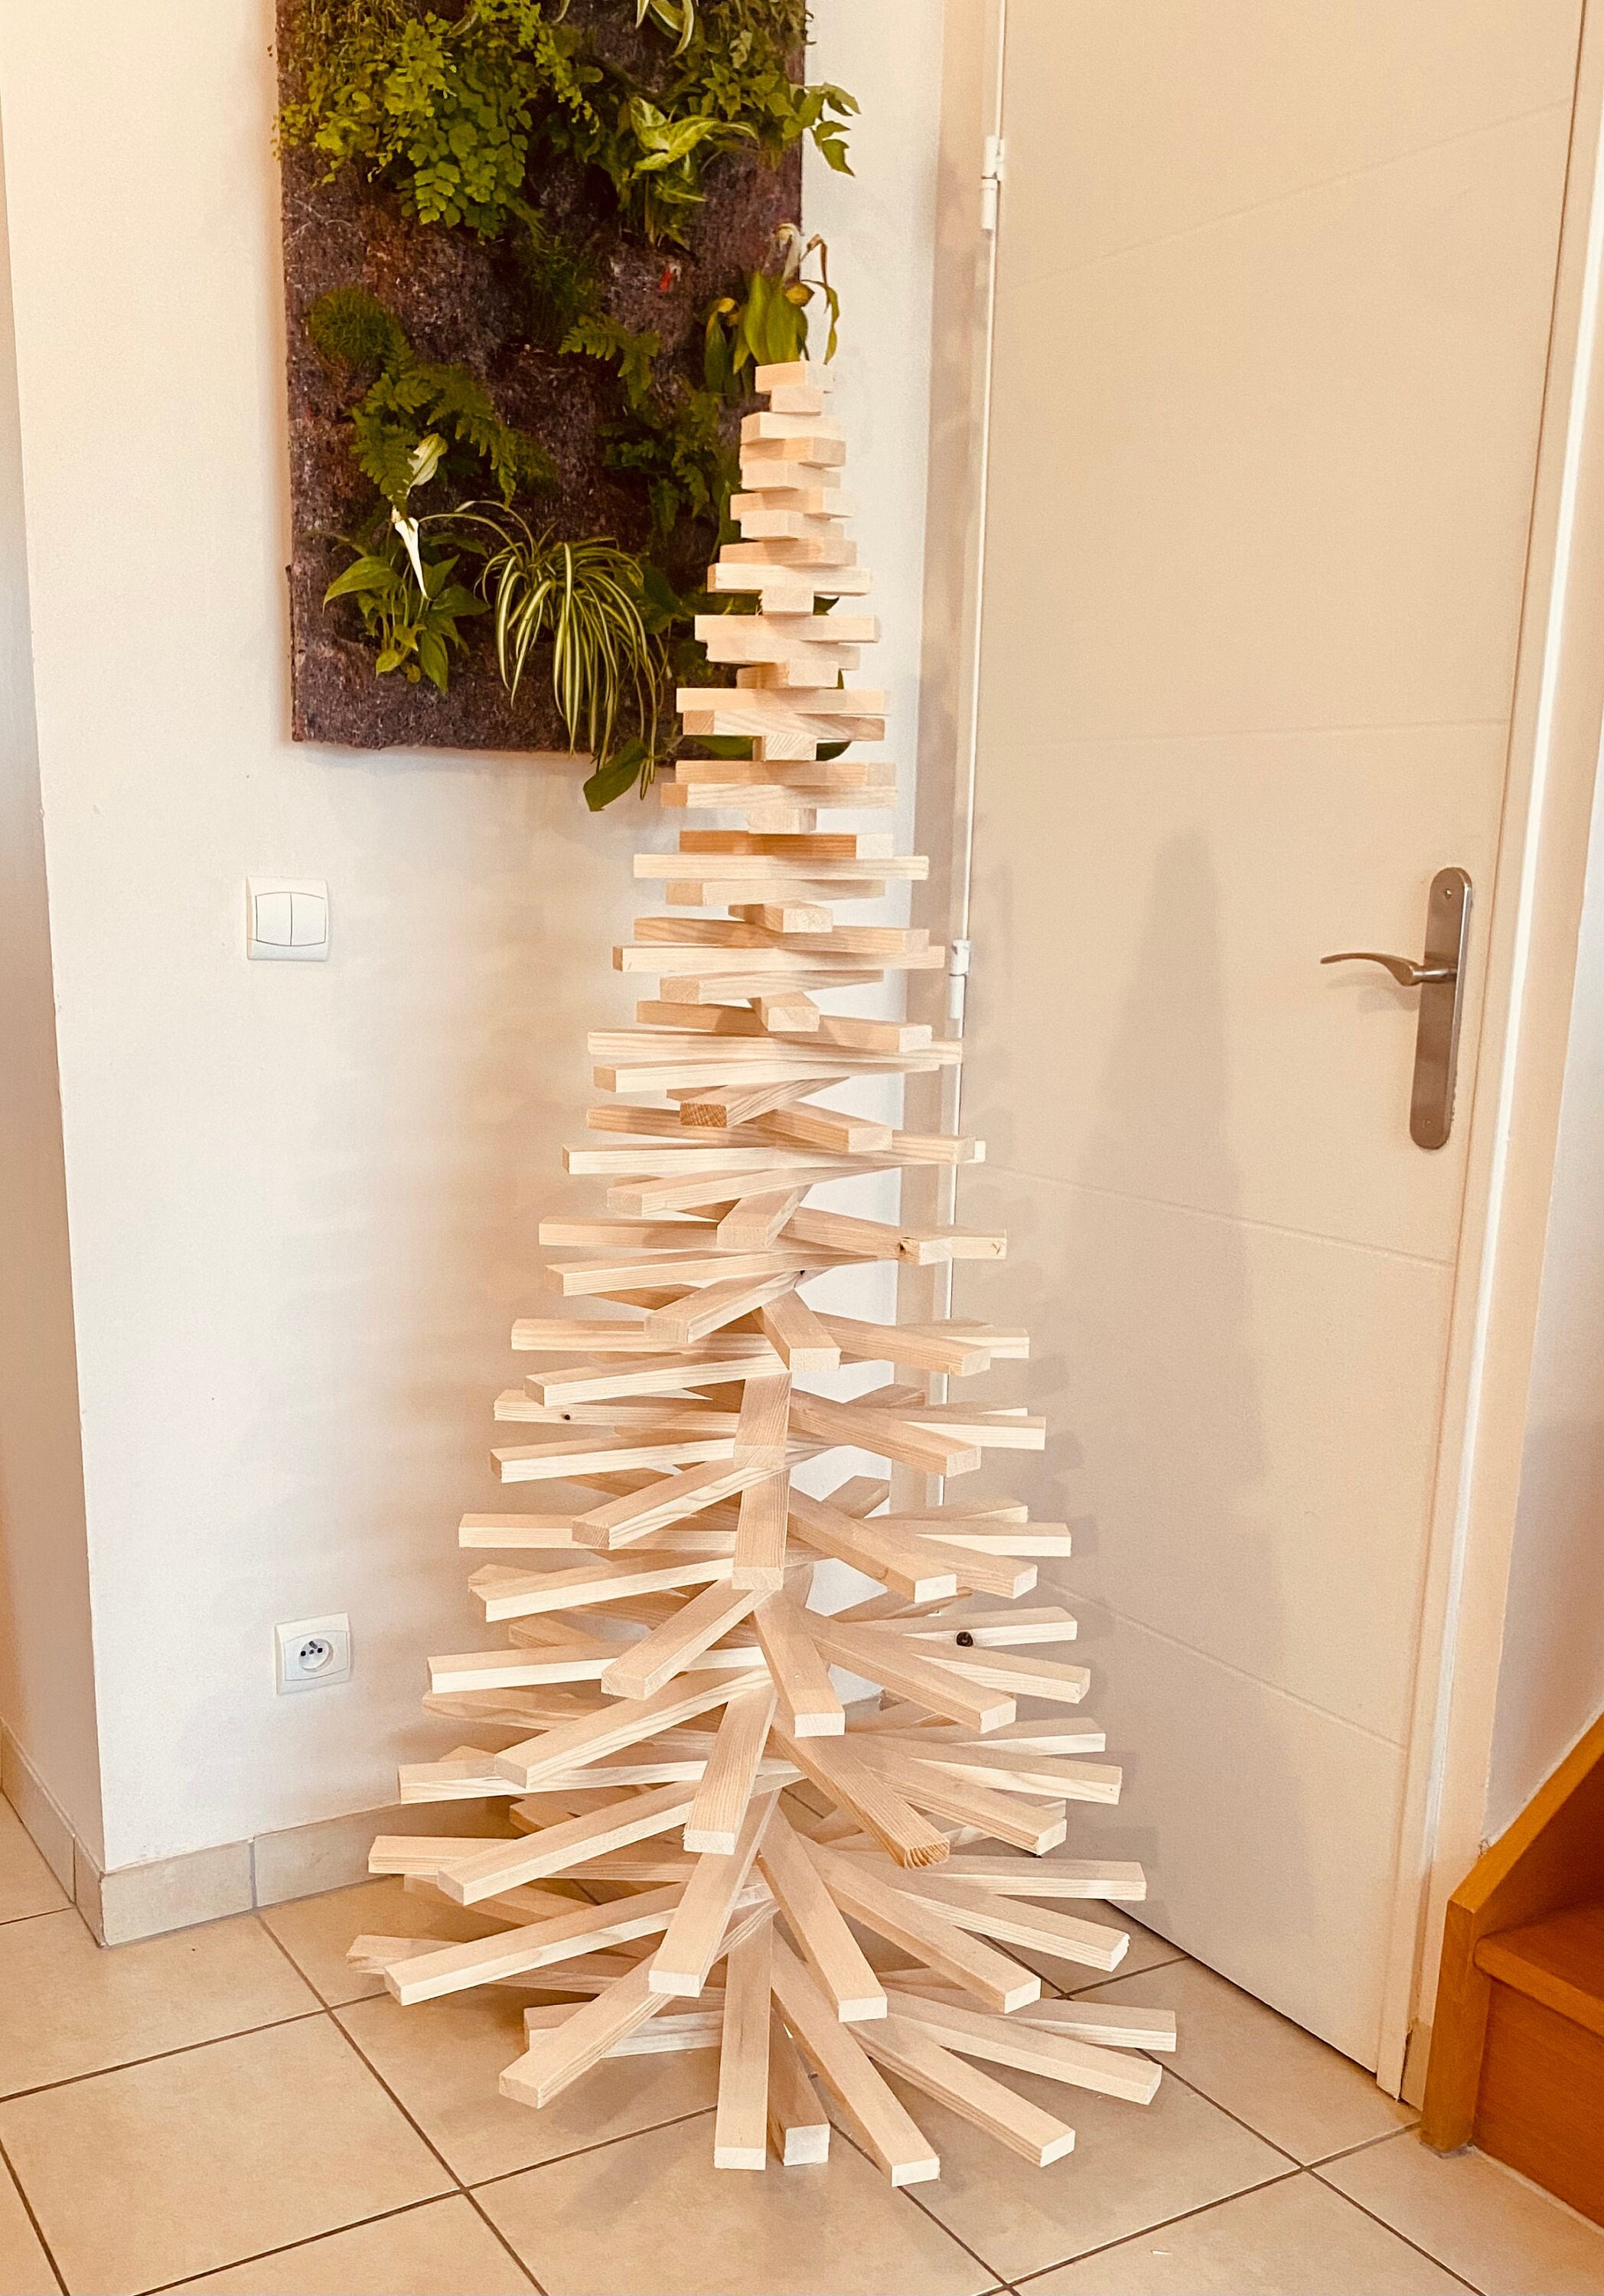 Hänger aus Holz für Spiralbaum, Modell SPIRA Small